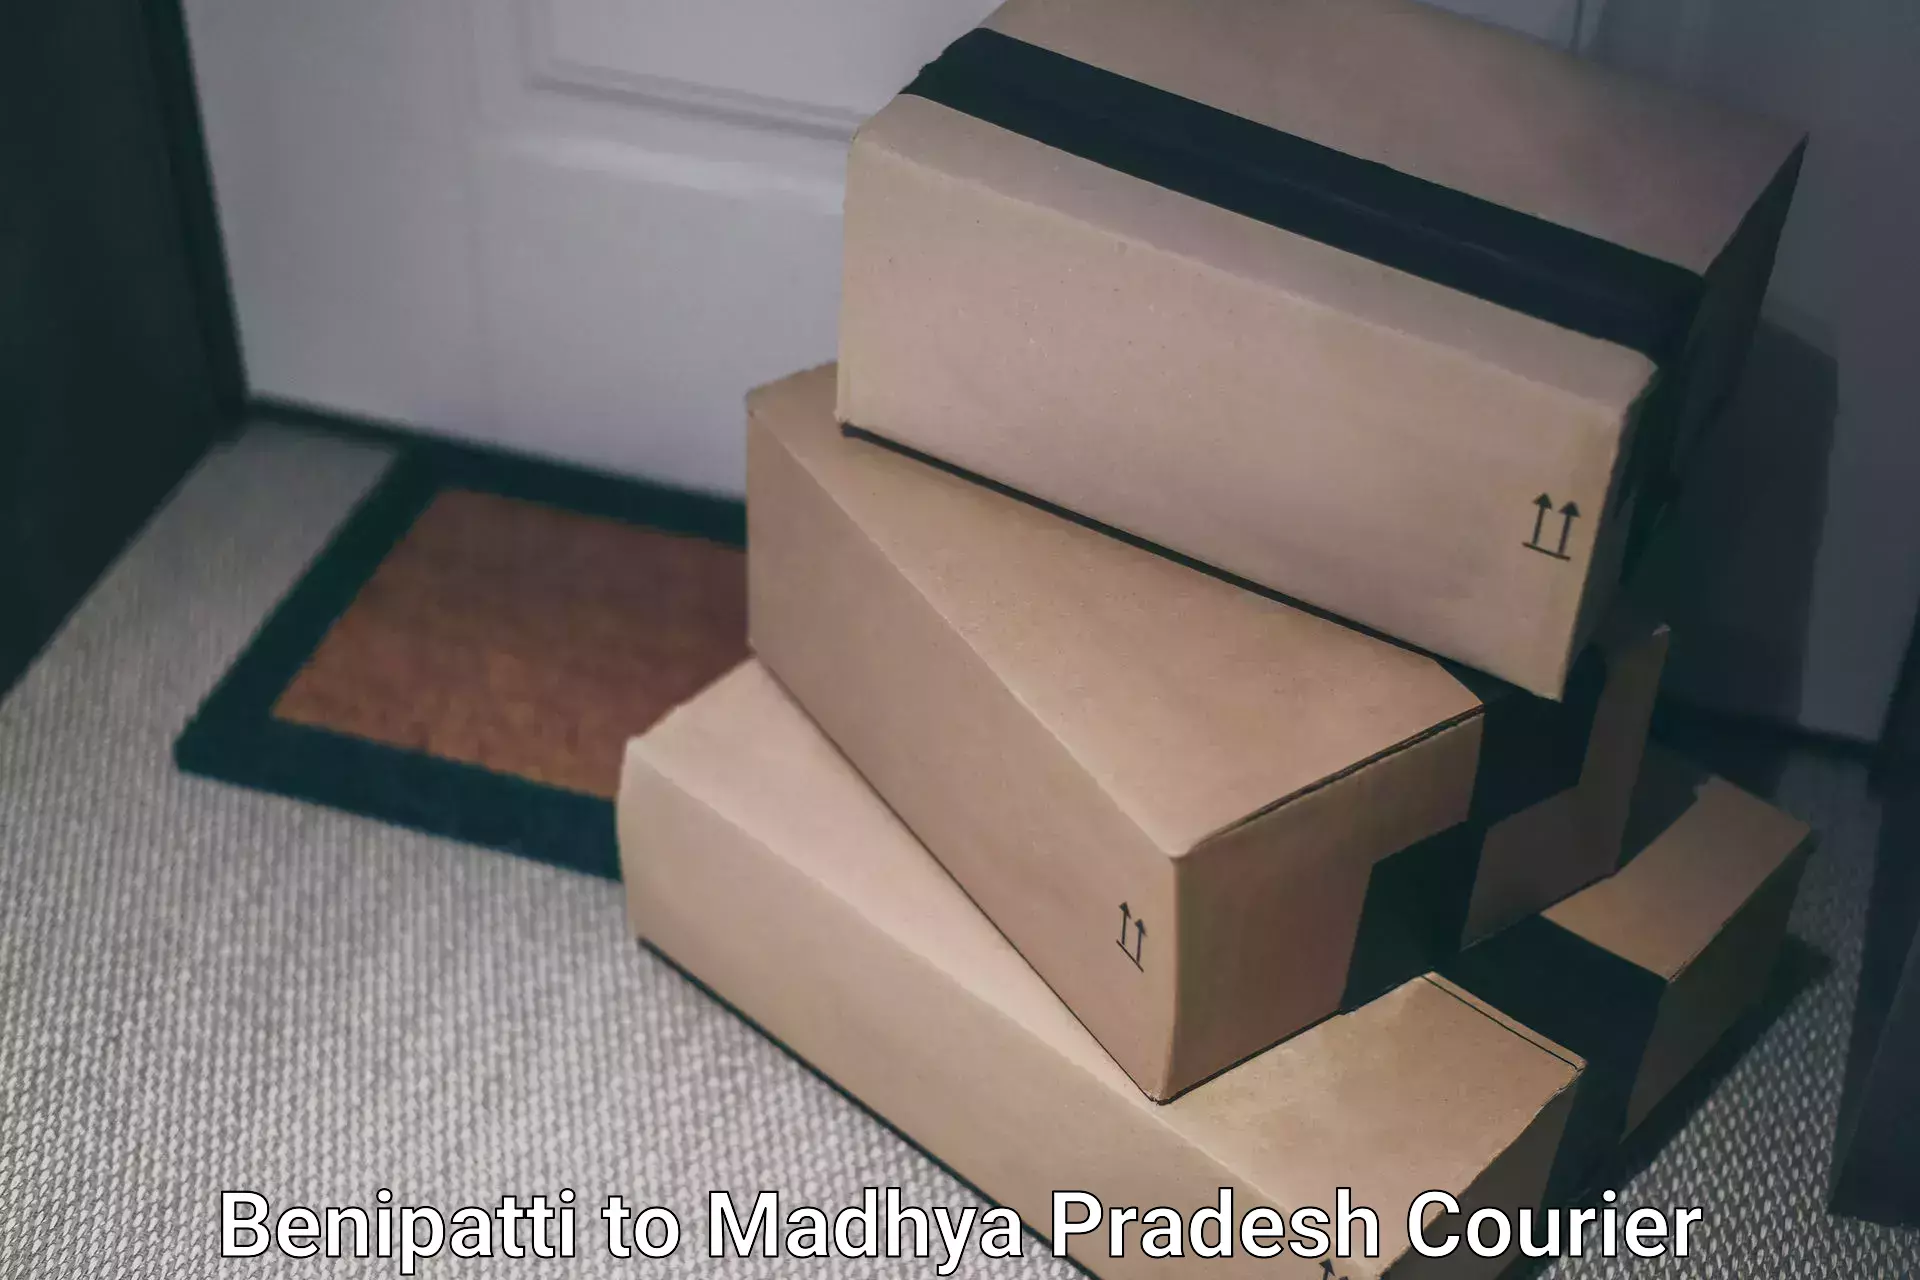 Premium delivery services Benipatti to Madhya Pradesh